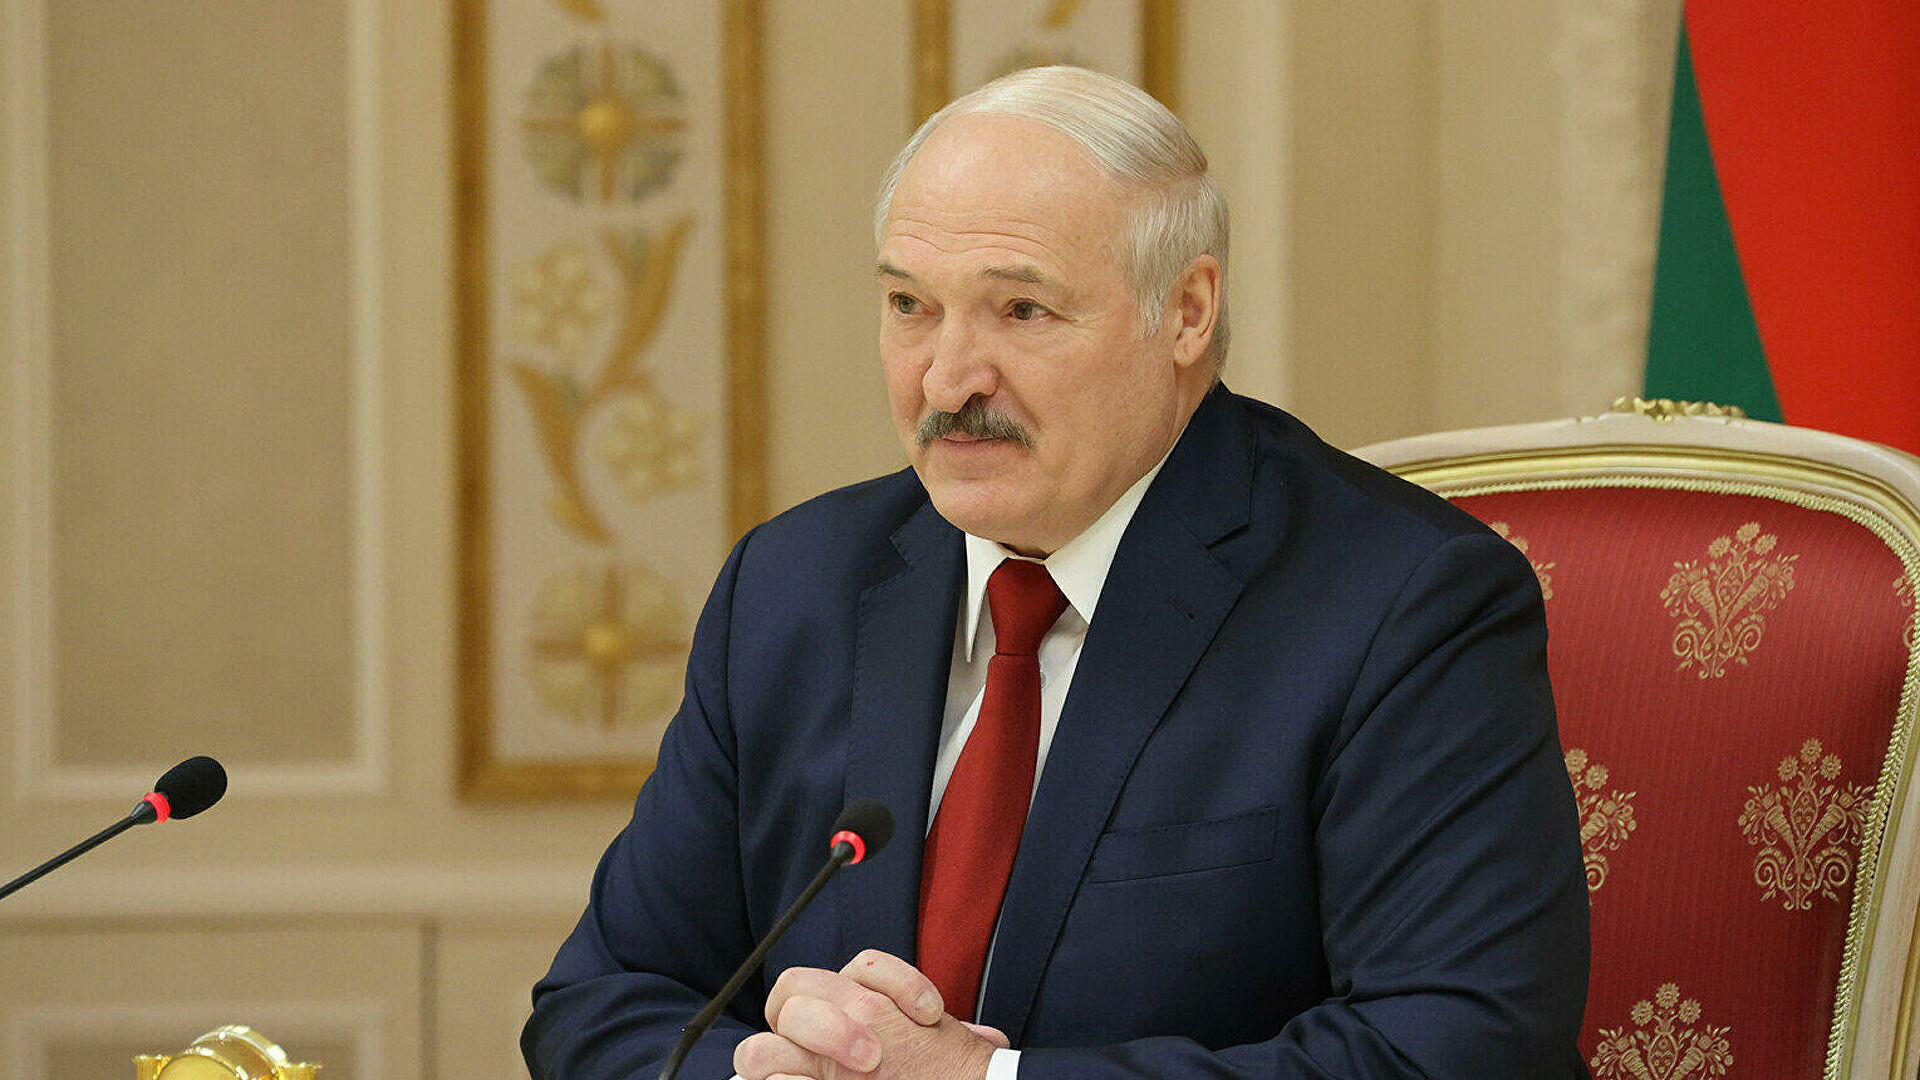 Президент Белоруссии Лукашенко призвал позволить новому поколению спокойно прийти к власти в стране